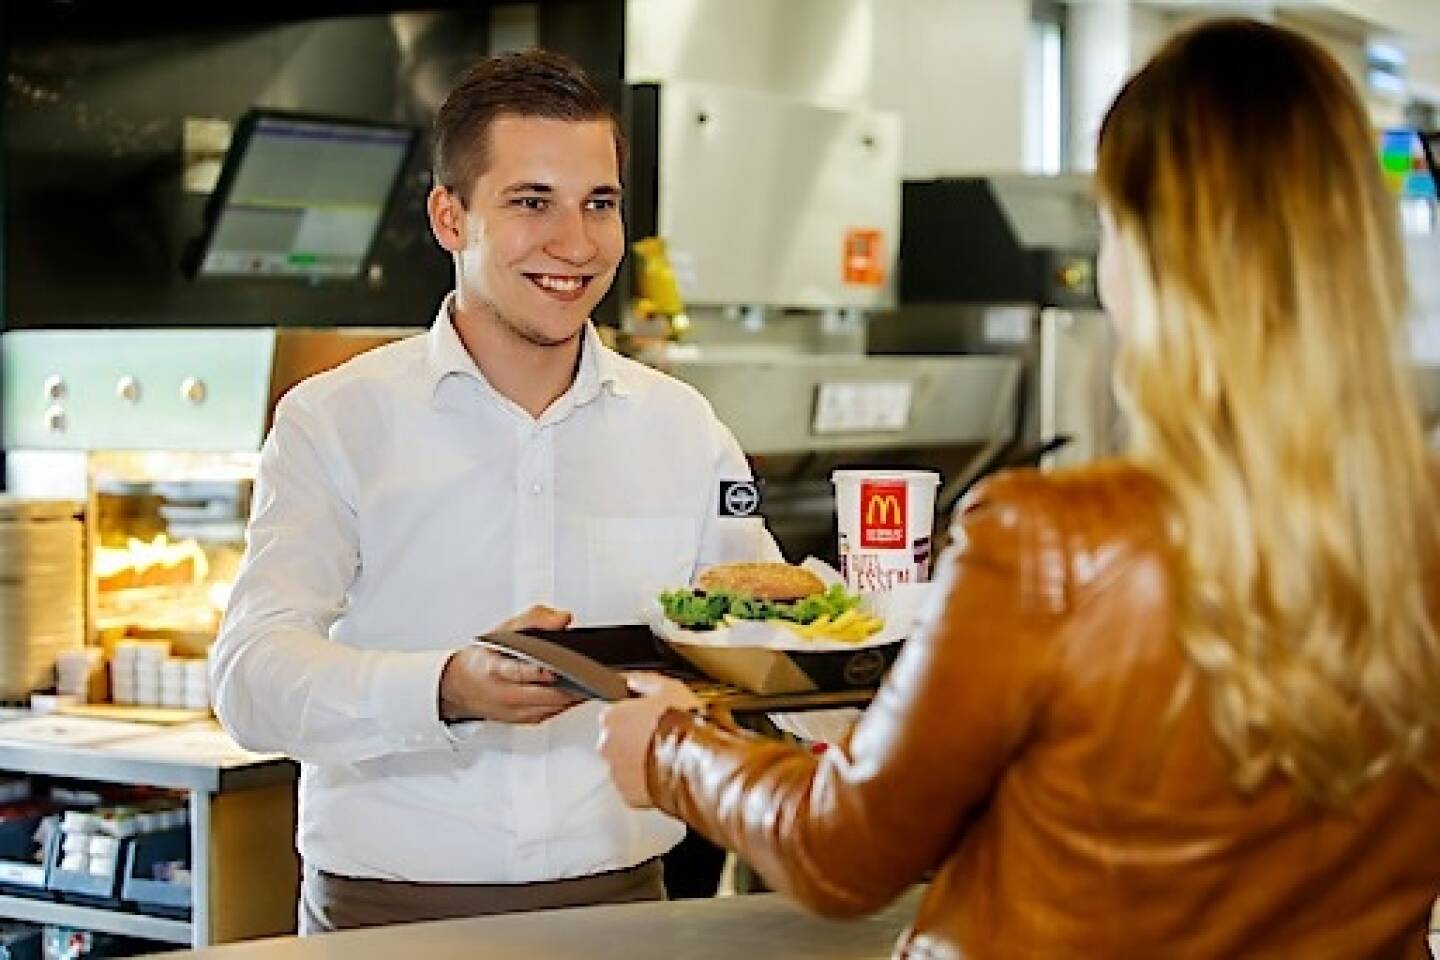 Mit einem Wachstum von 35 Millionen Euro (+6%) erzielte der heimische Systemgastronomie-Marktführer McDonald’s Österreich 621 Millionen Euro Umsatz im Jahr 2017 und damit das beste Ergebnis seit der Eröffnung des ersten österreichischen Restaurants vor über 40 Jahren. Credit: McDonald's Österreich